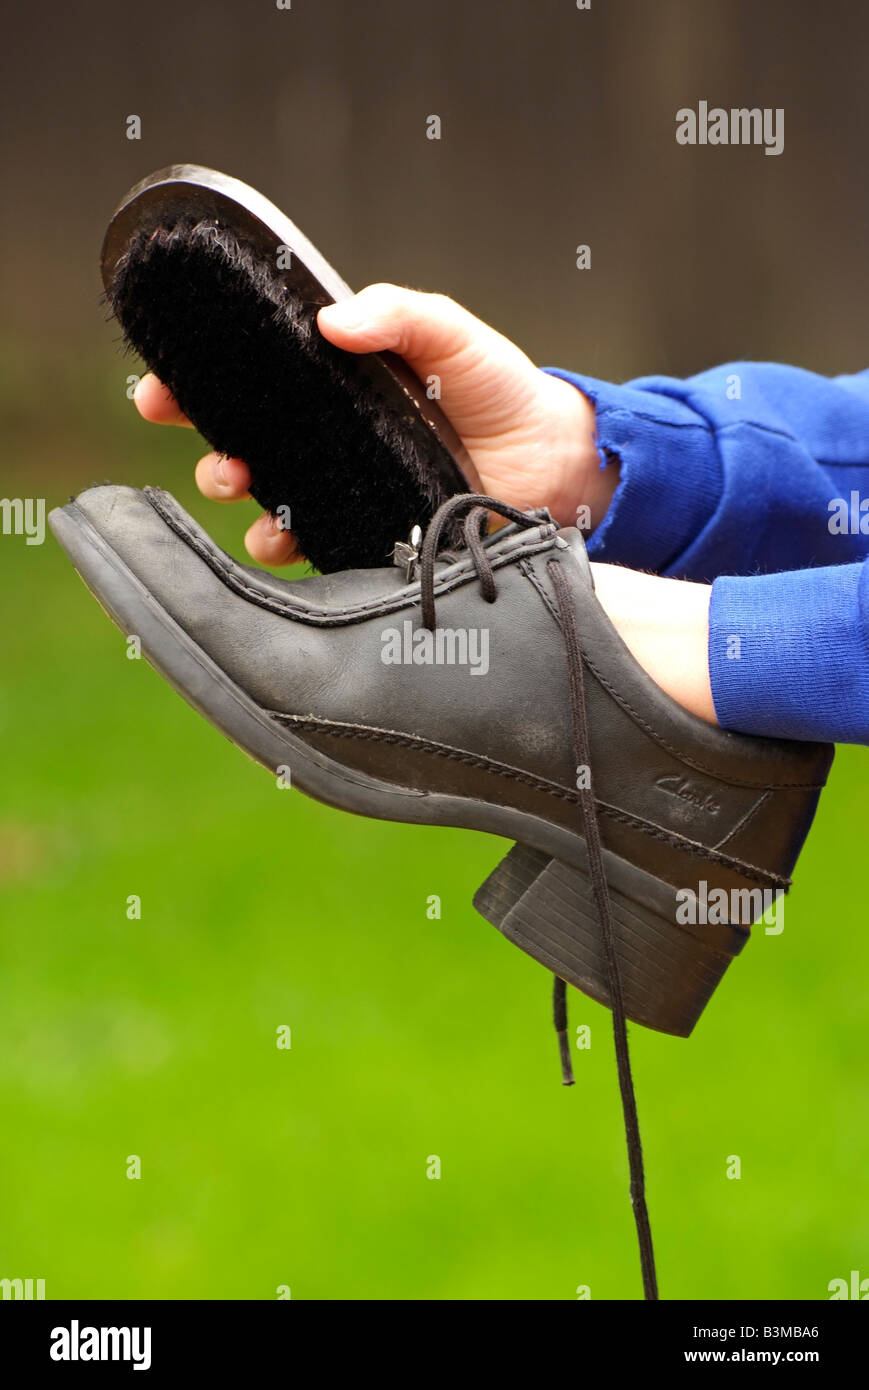 shoe polish at home